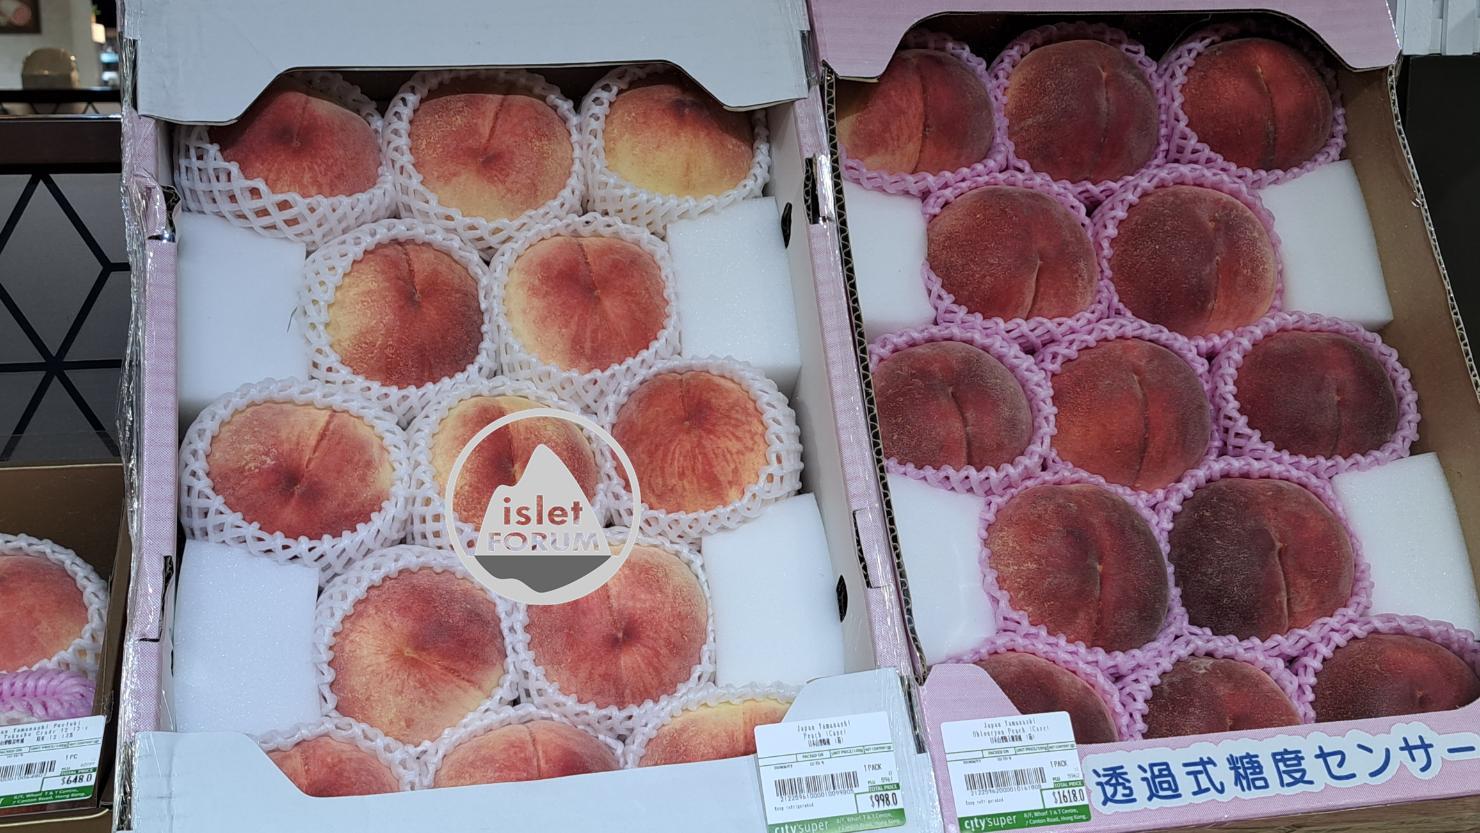 Ciysuper日本水蜜桃盒 Ciysuper Japanese peach box.jpg